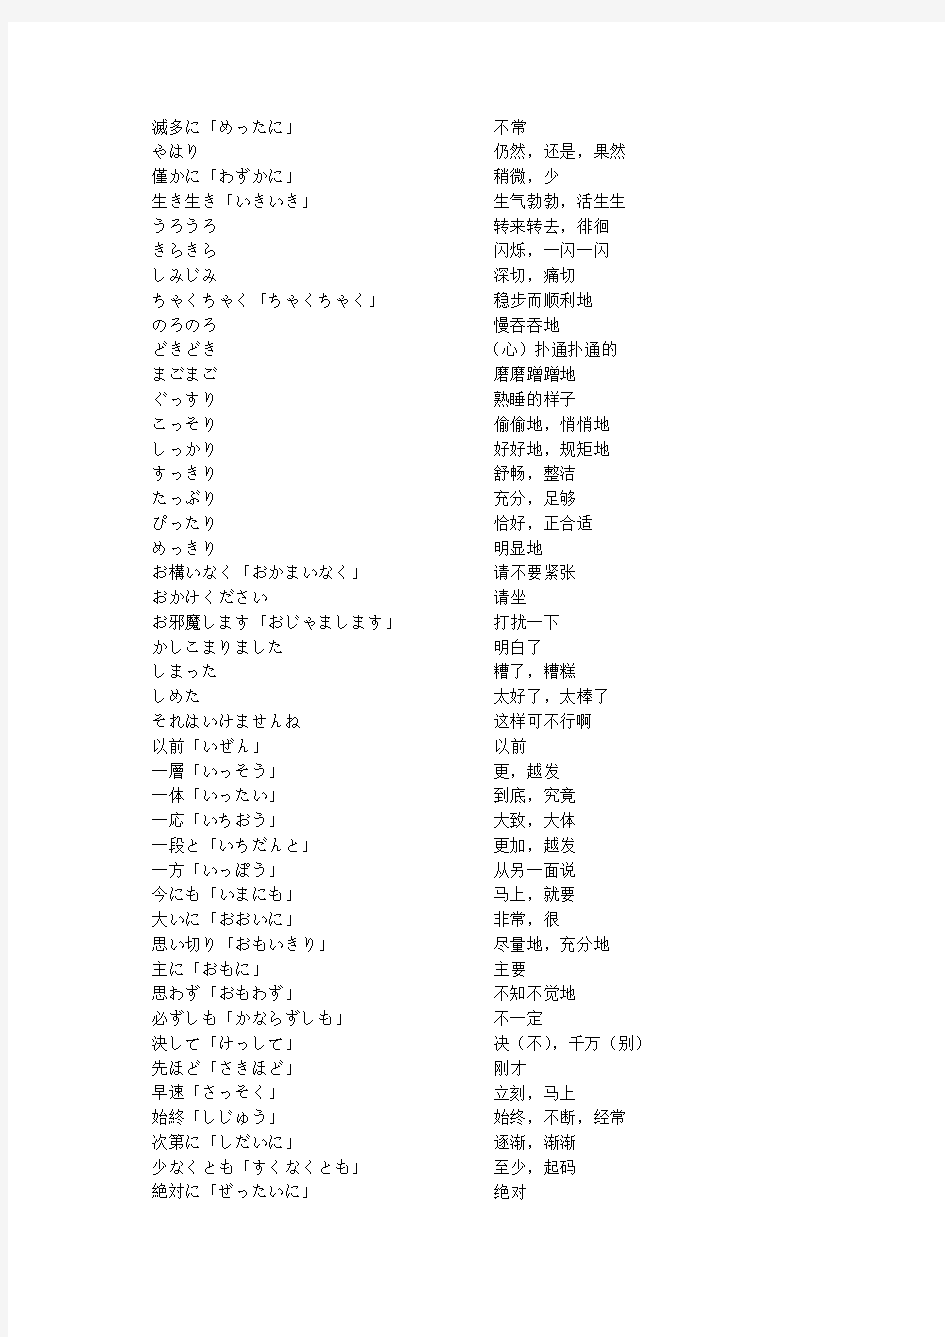 日语中100个重要副词